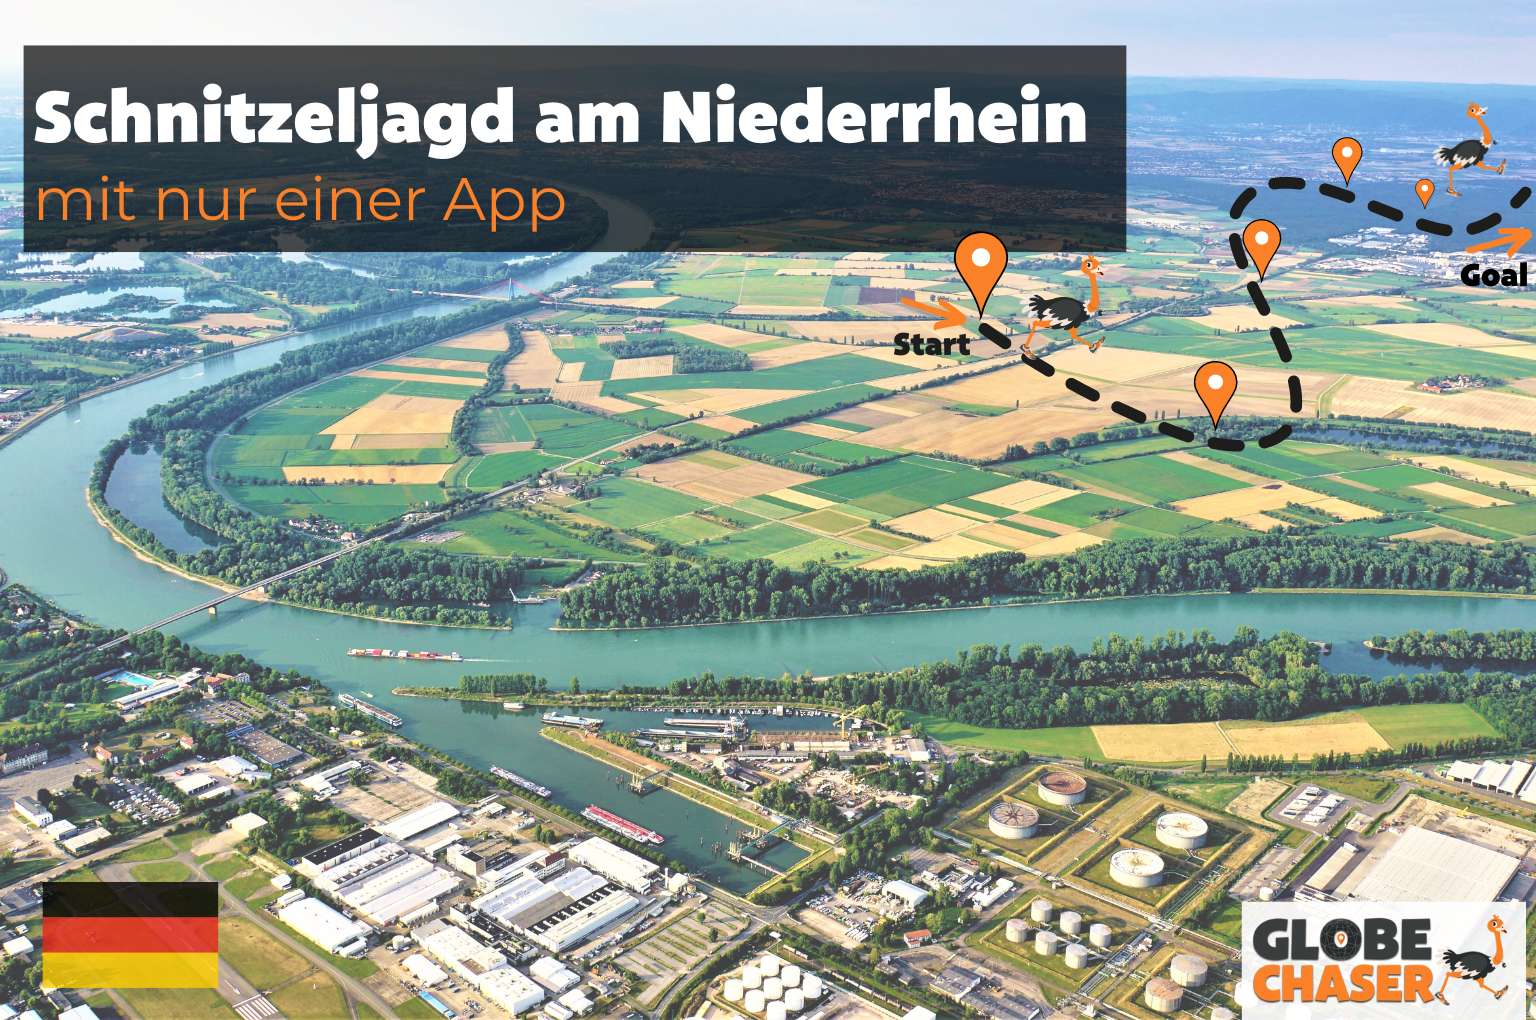 Schnitzeljagd am Niederrhein mit App - Globe Chaser Erlebnisse Deutschland